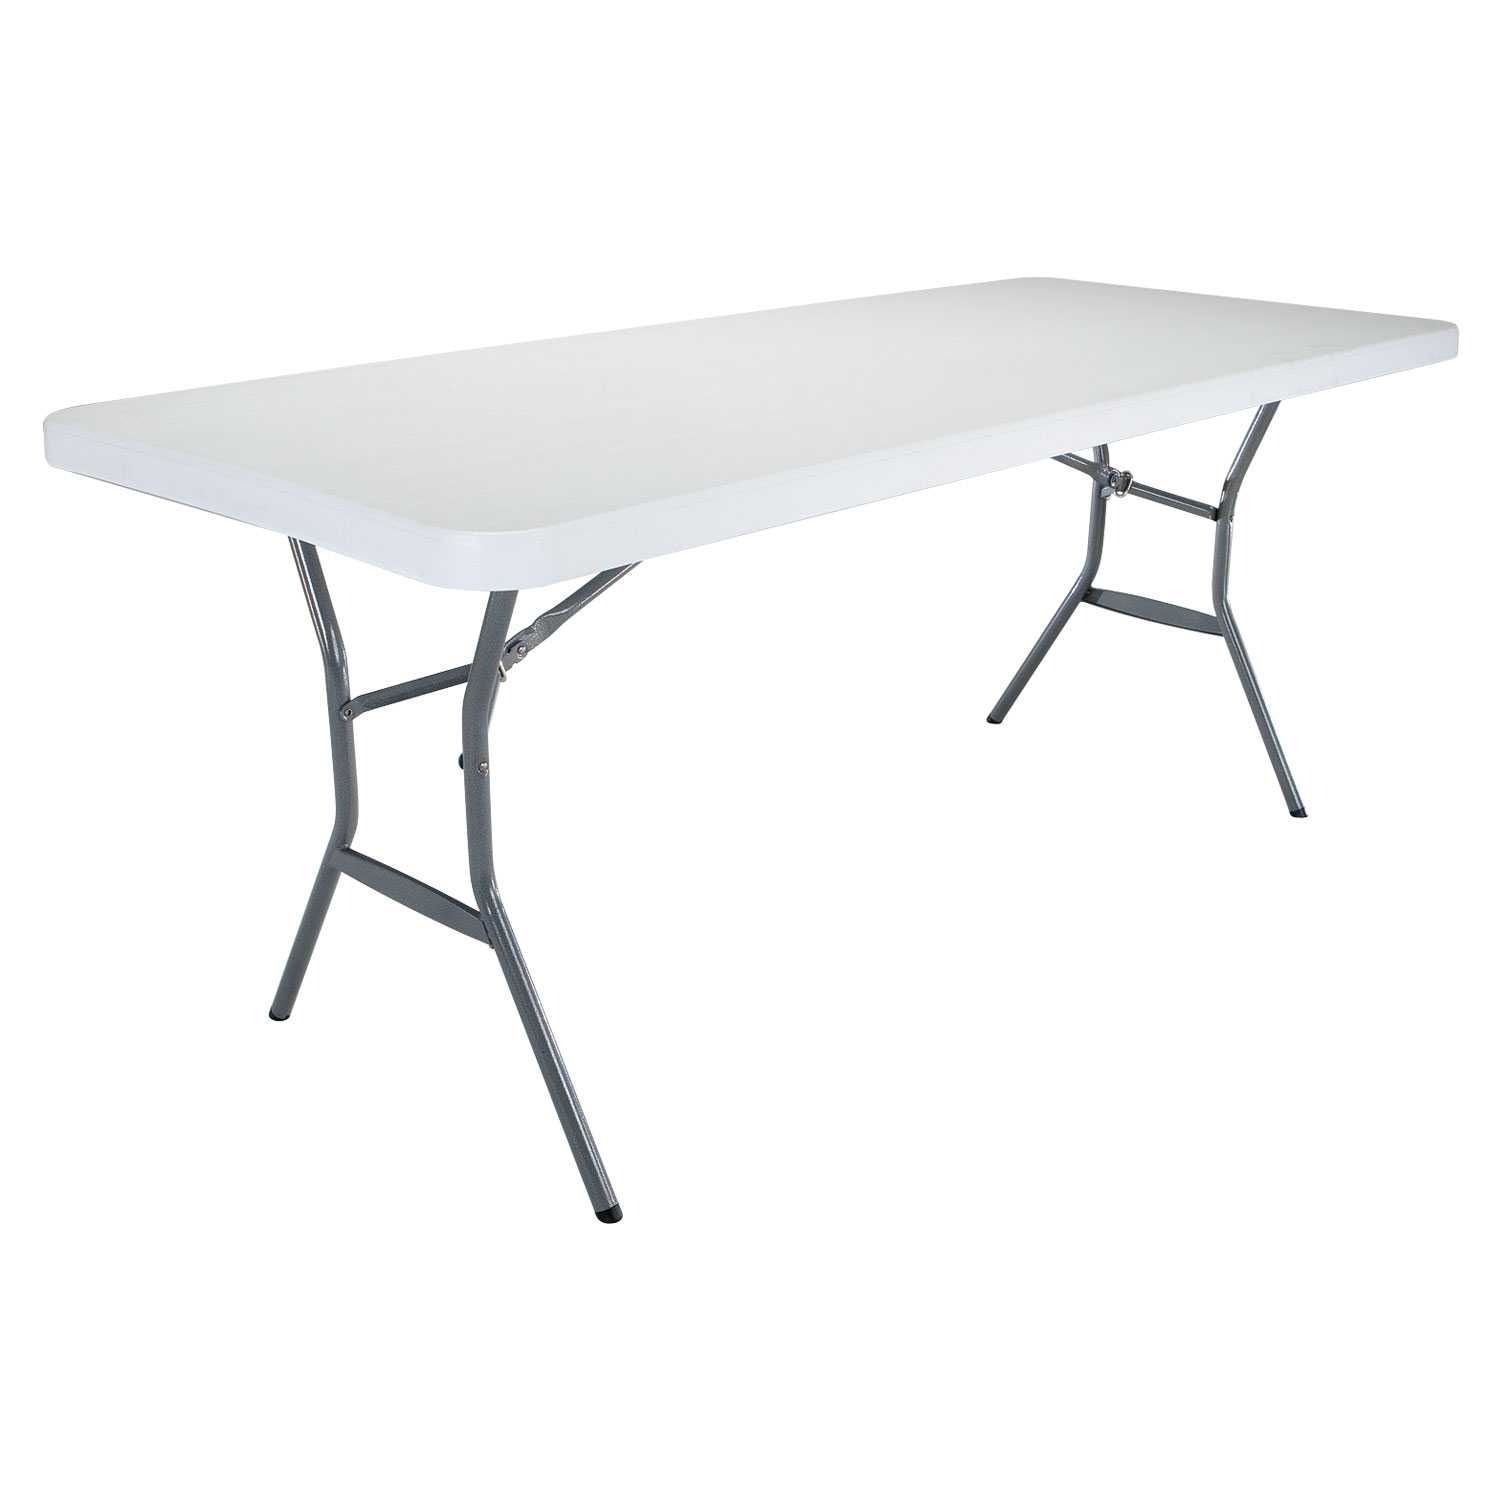 Table pliante rectangulaire 183cm (blanc) / 8 personnes